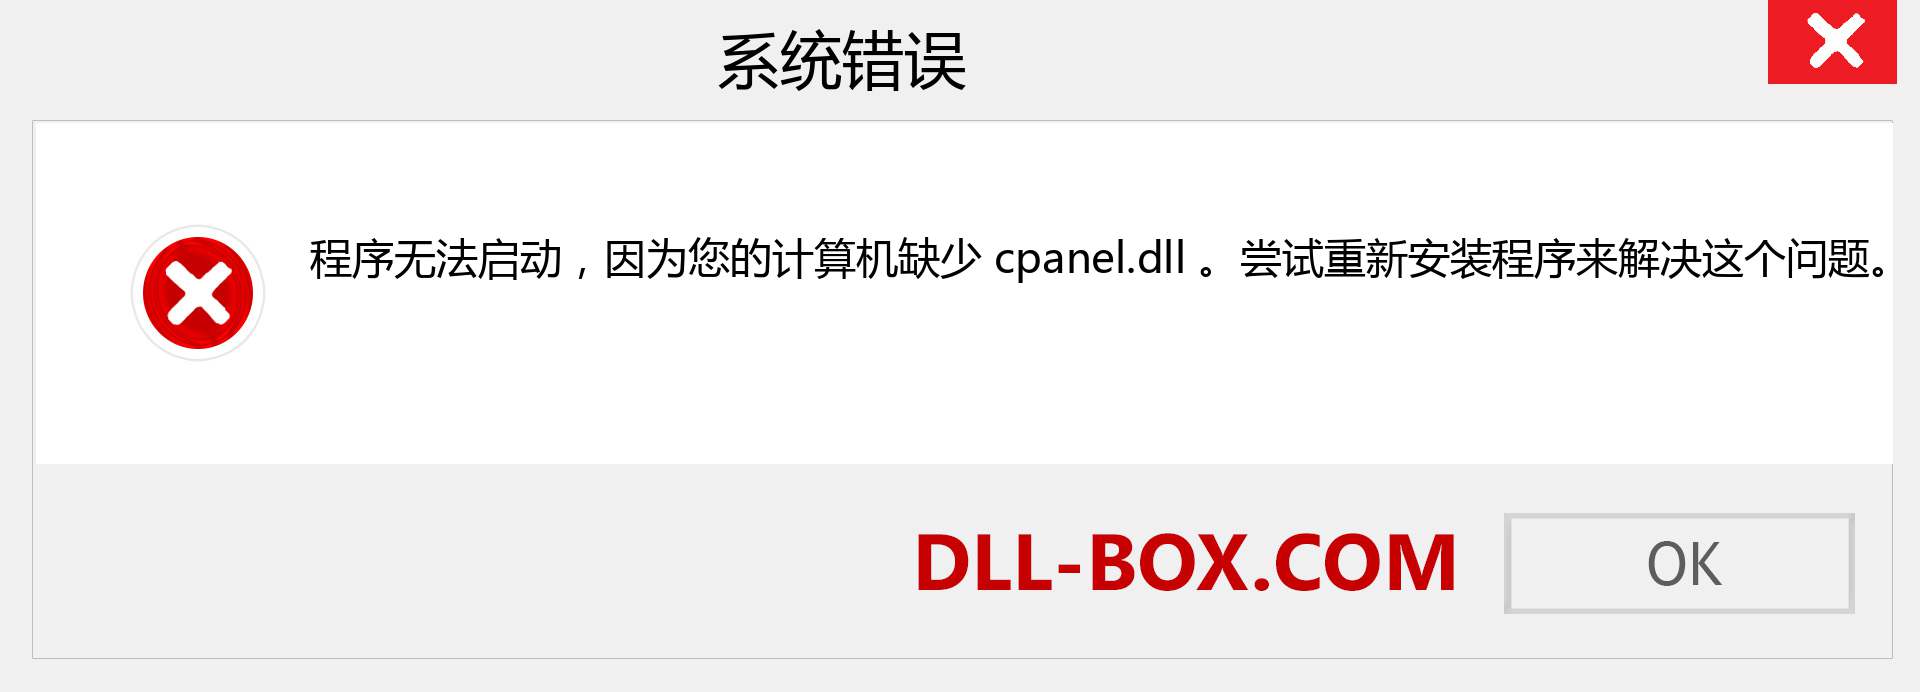 cpanel.dll 文件丢失？。 适用于 Windows 7、8、10 的下载 - 修复 Windows、照片、图像上的 cpanel dll 丢失错误